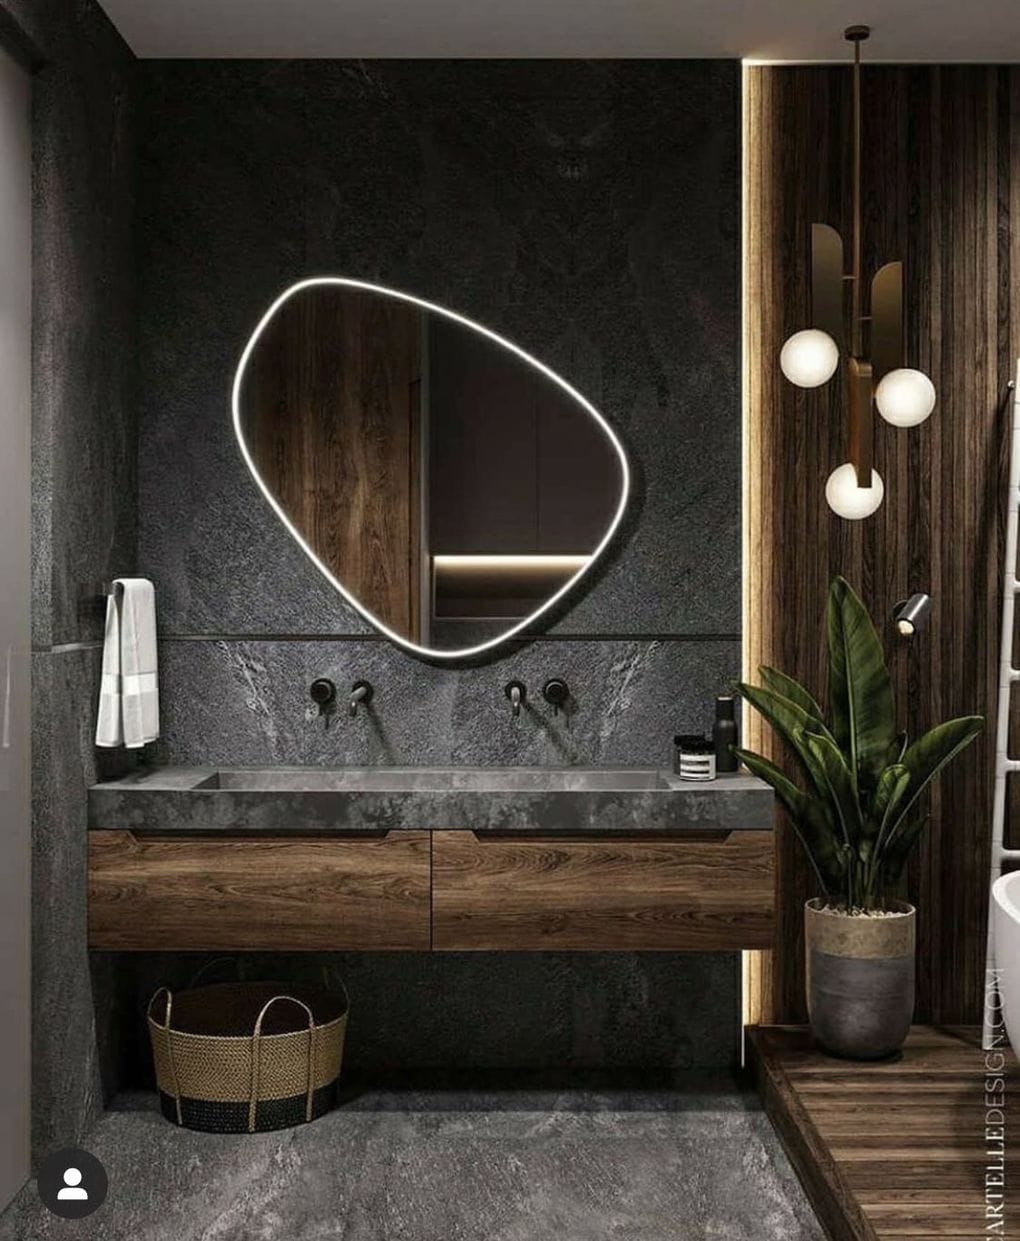 Какие акценты добавят ванной комнате стильности интерьер,переделки,рукоделие,своими руками,сделай сам